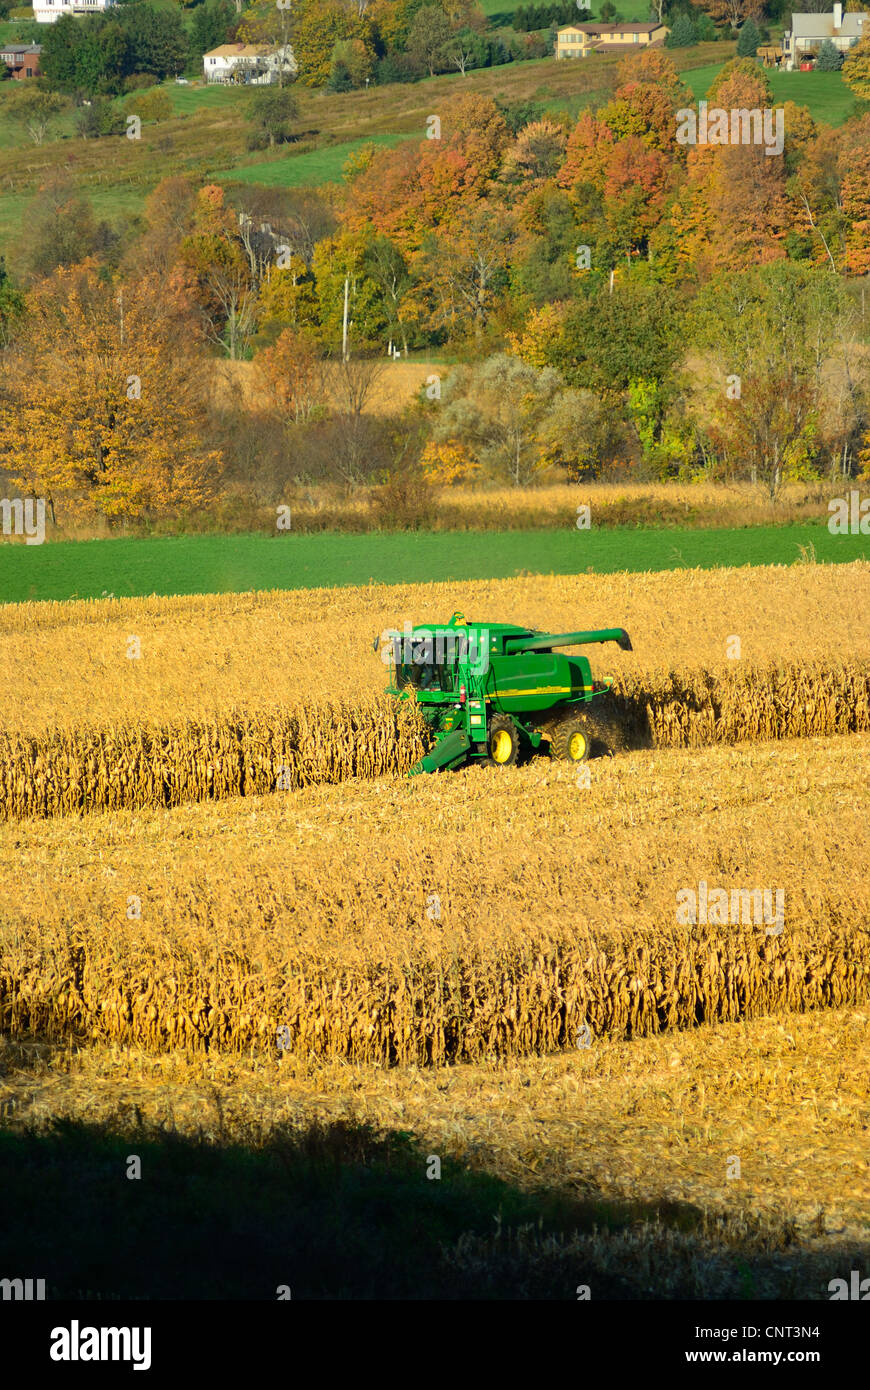 John Deere harvester Stock Photo